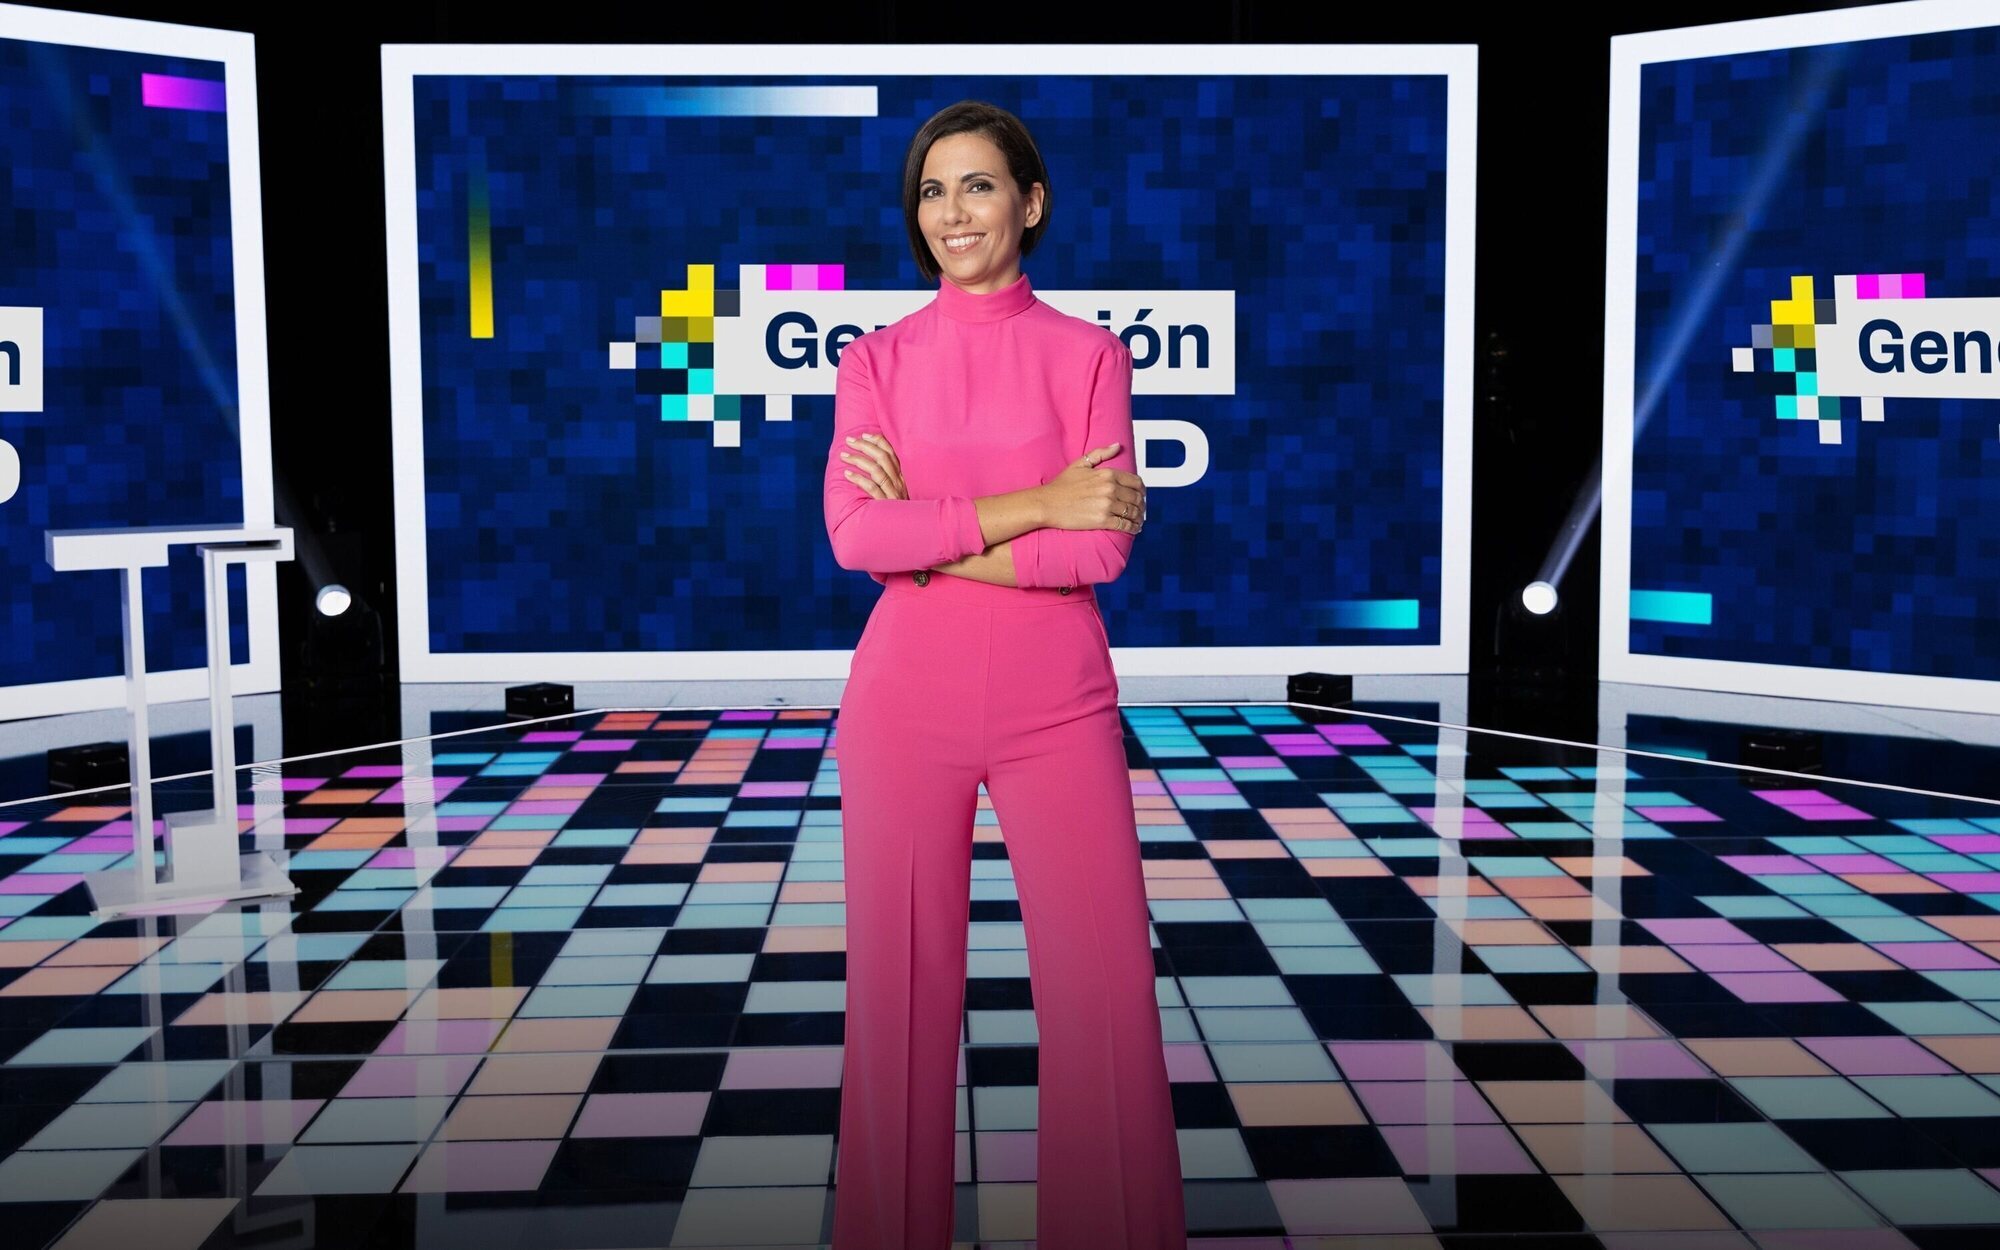 'Generación top', el concurso de Ana Pastor, se estrenará el 3 de enero en laSexta